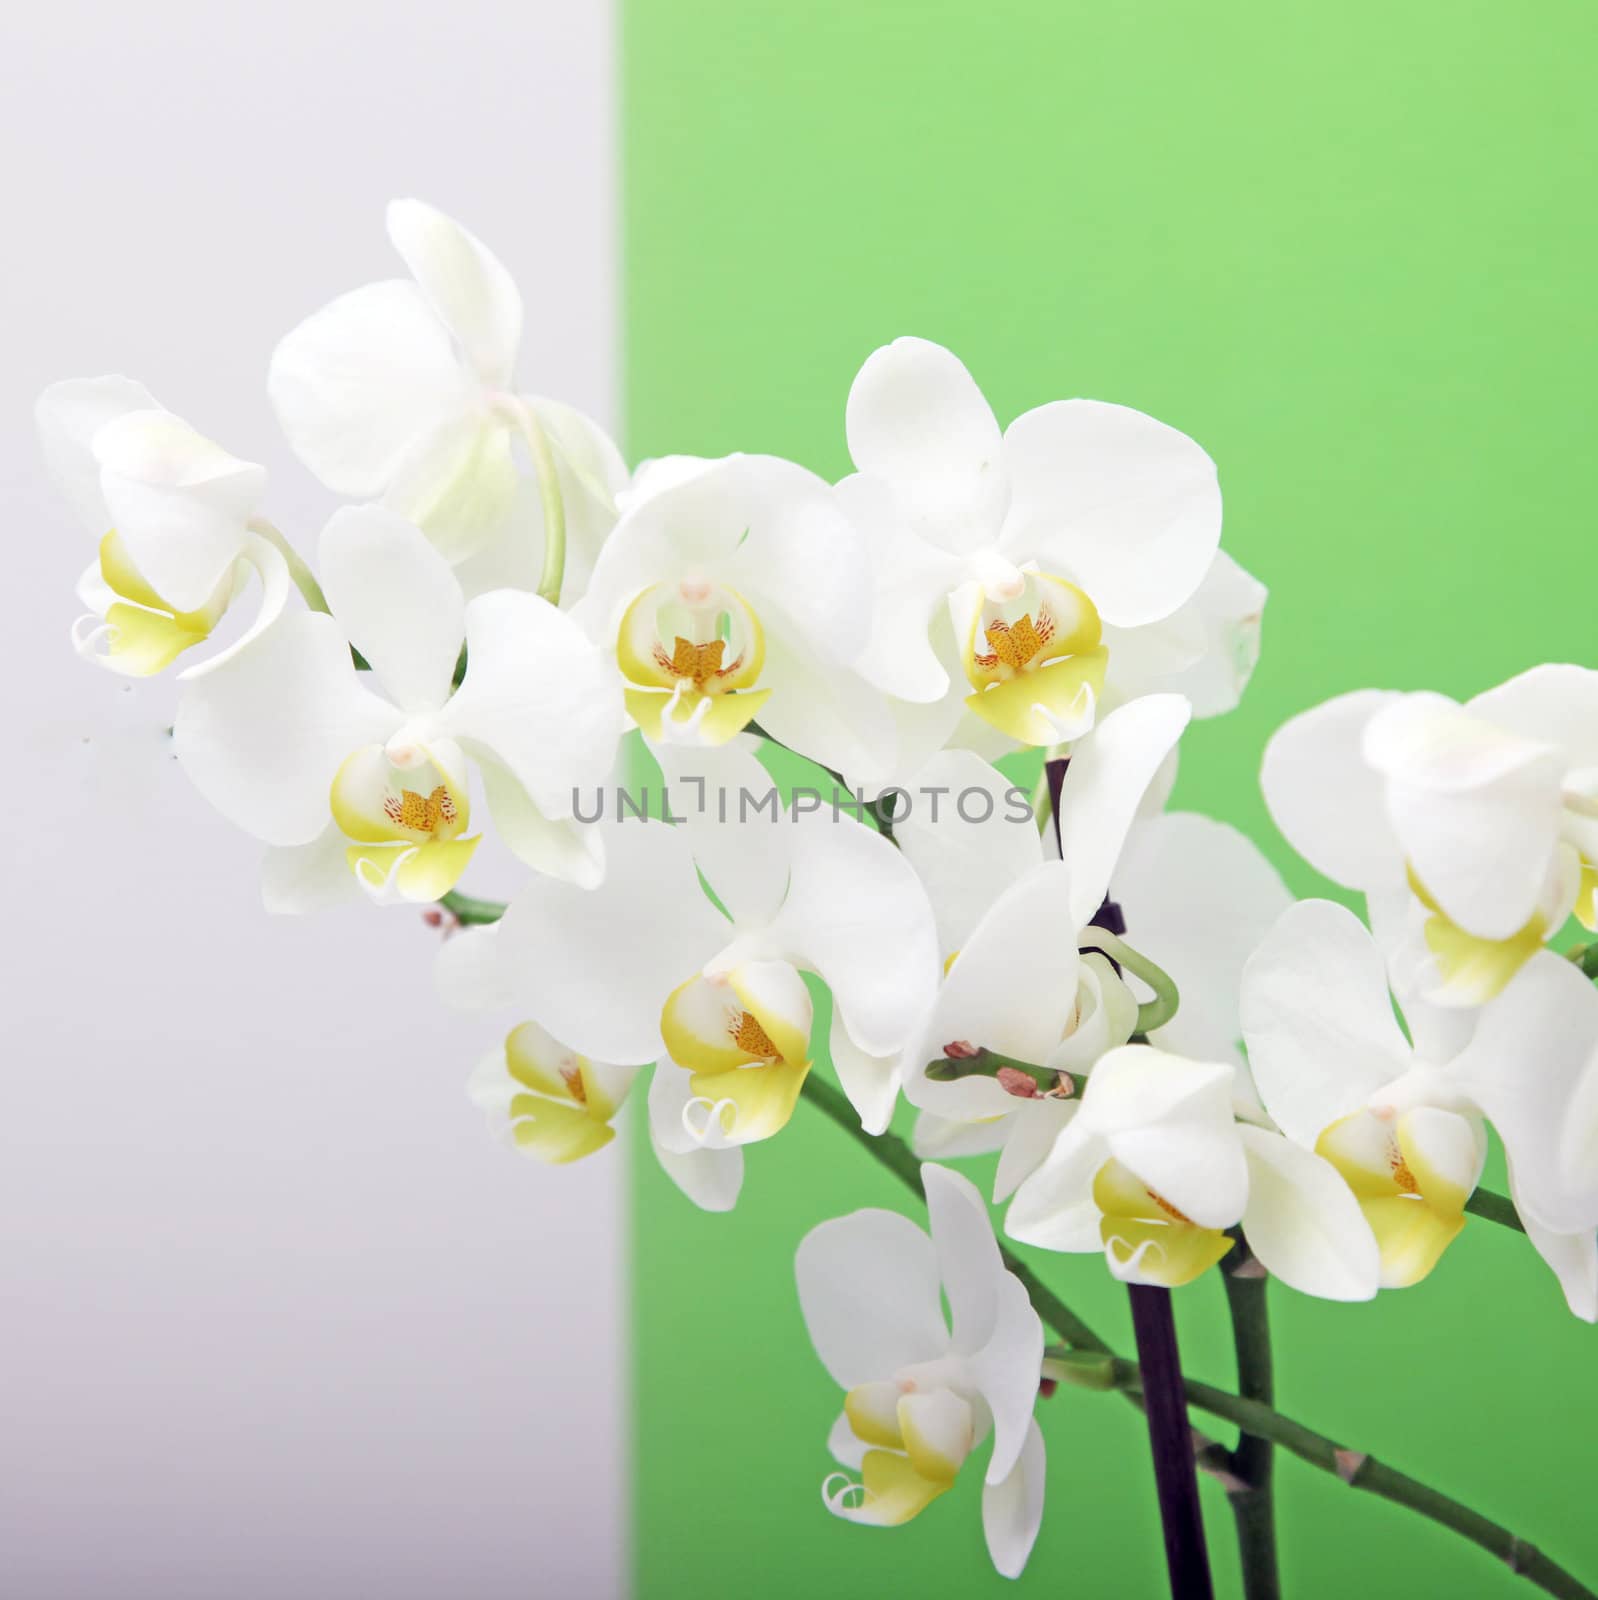 Decorative White Orchids by Farina6000